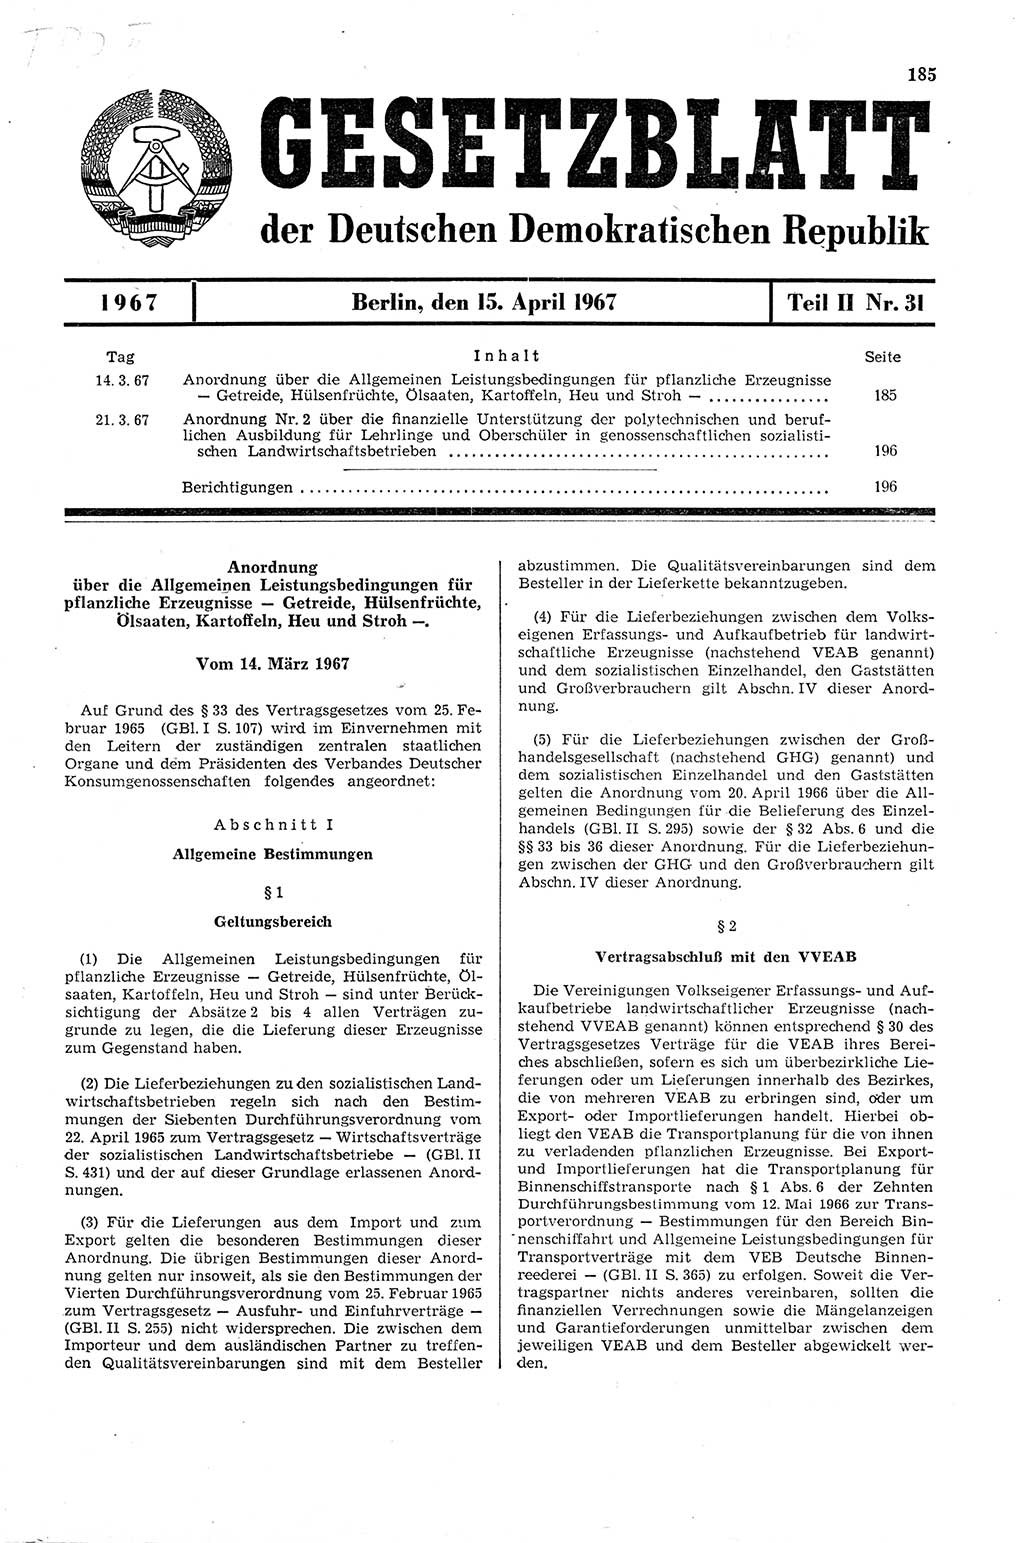 Gesetzblatt (GBl.) der Deutschen Demokratischen Republik (DDR) Teil ⅠⅠ 1967, Seite 185 (GBl. DDR ⅠⅠ 1967, S. 185)